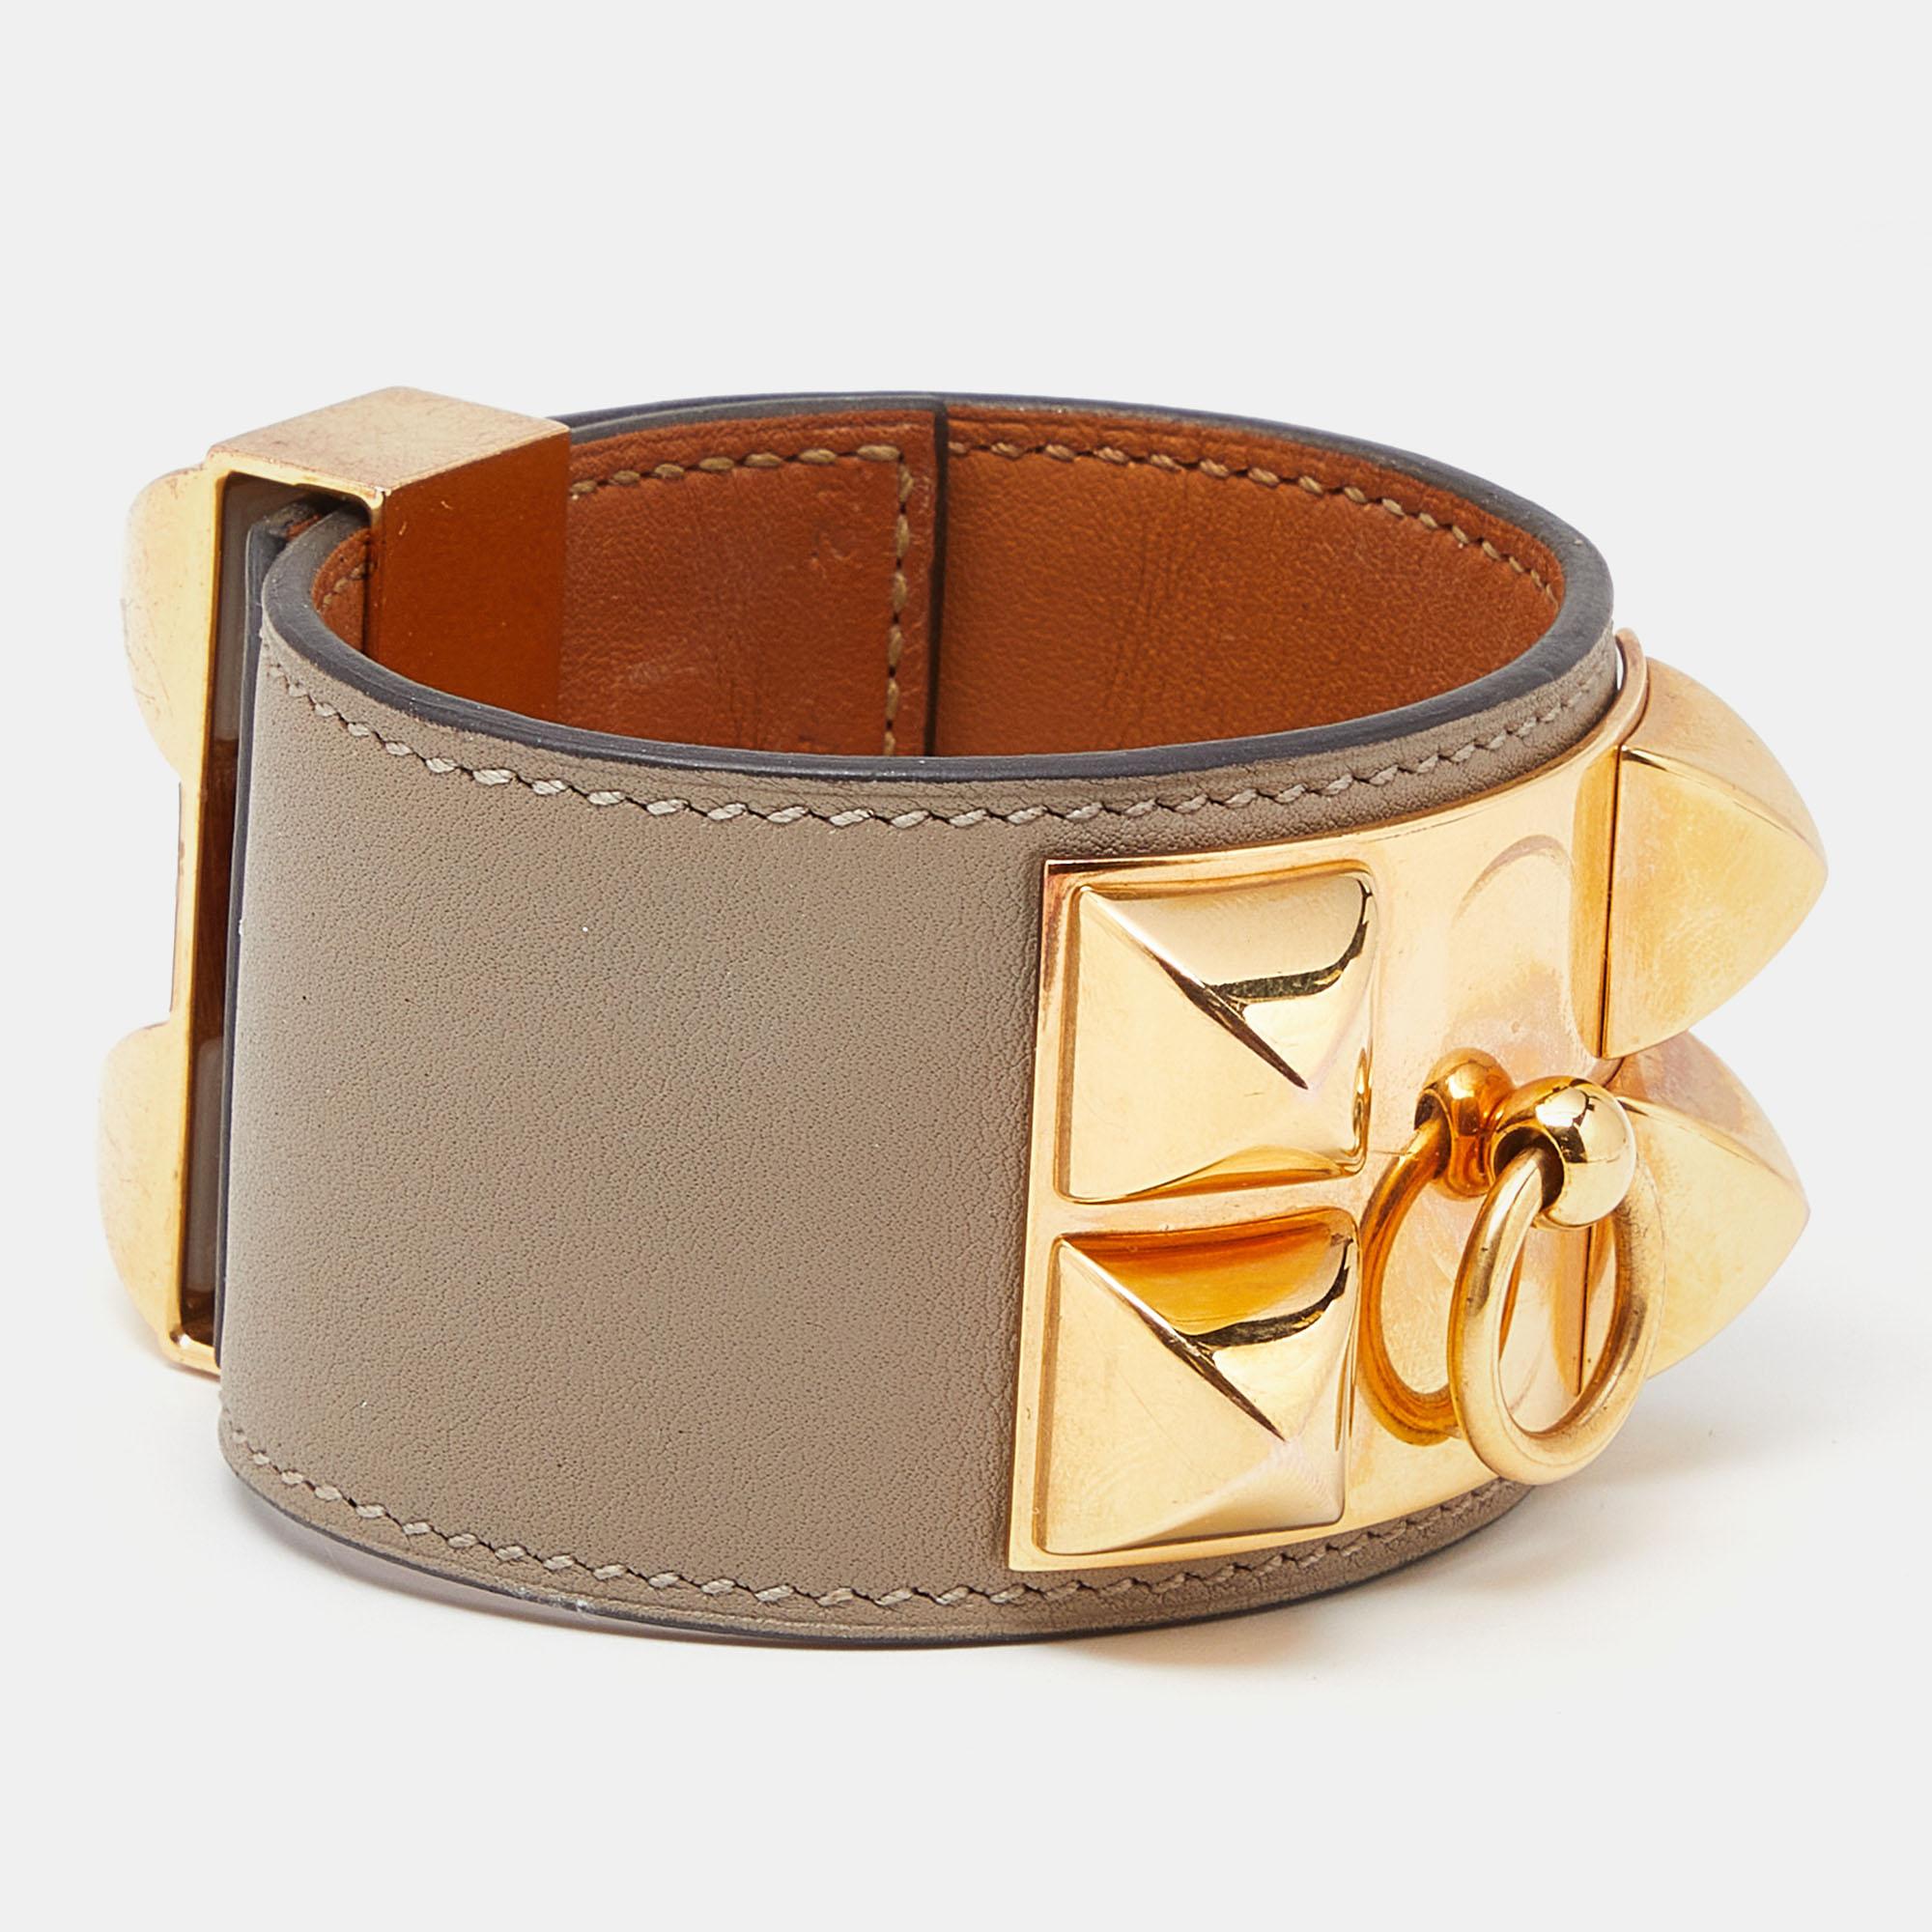 Bringen Sie mit diesem Armband die Magie von Hermes in Ihre Garderobe. Dieses Lederarmband ist mit feinen Linien und vergoldetem Metall gestaltet. Mit seinen charakteristischen Details verleiht er Ihrem Ensemble einen luxuriösen Charme.

